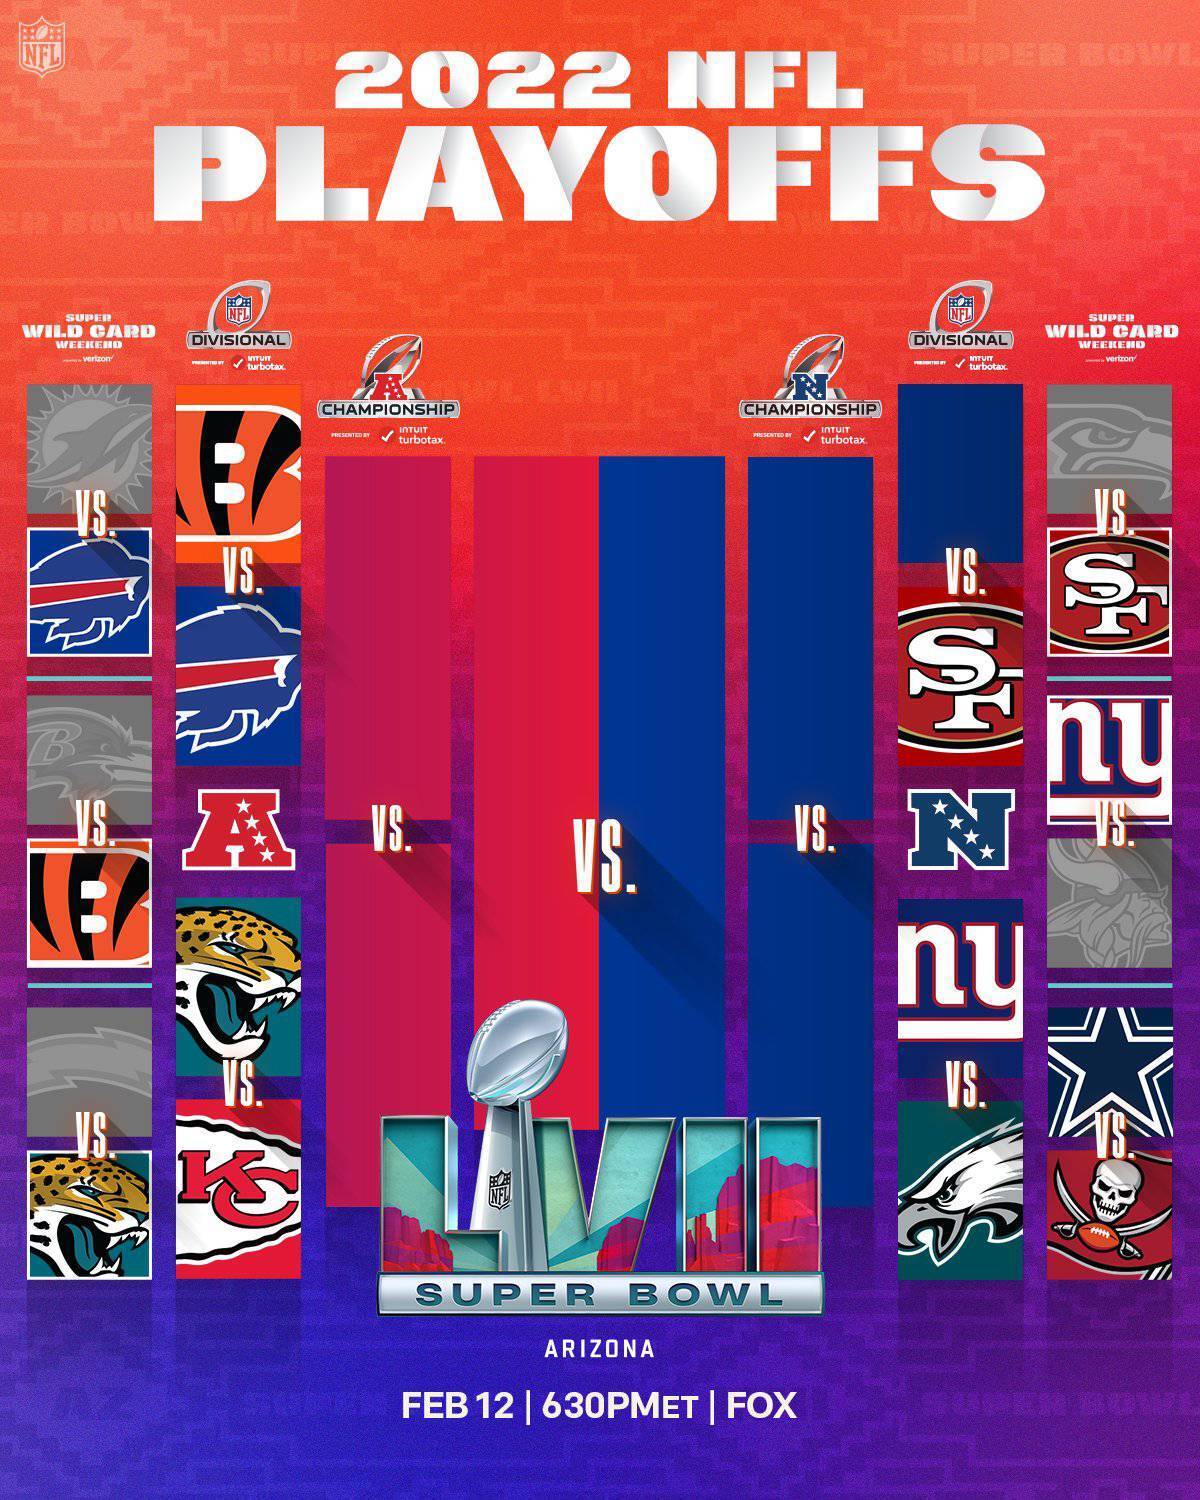 Cincinnati Bengals vs. Buffalo Bills NFL playoff game schedule, TV